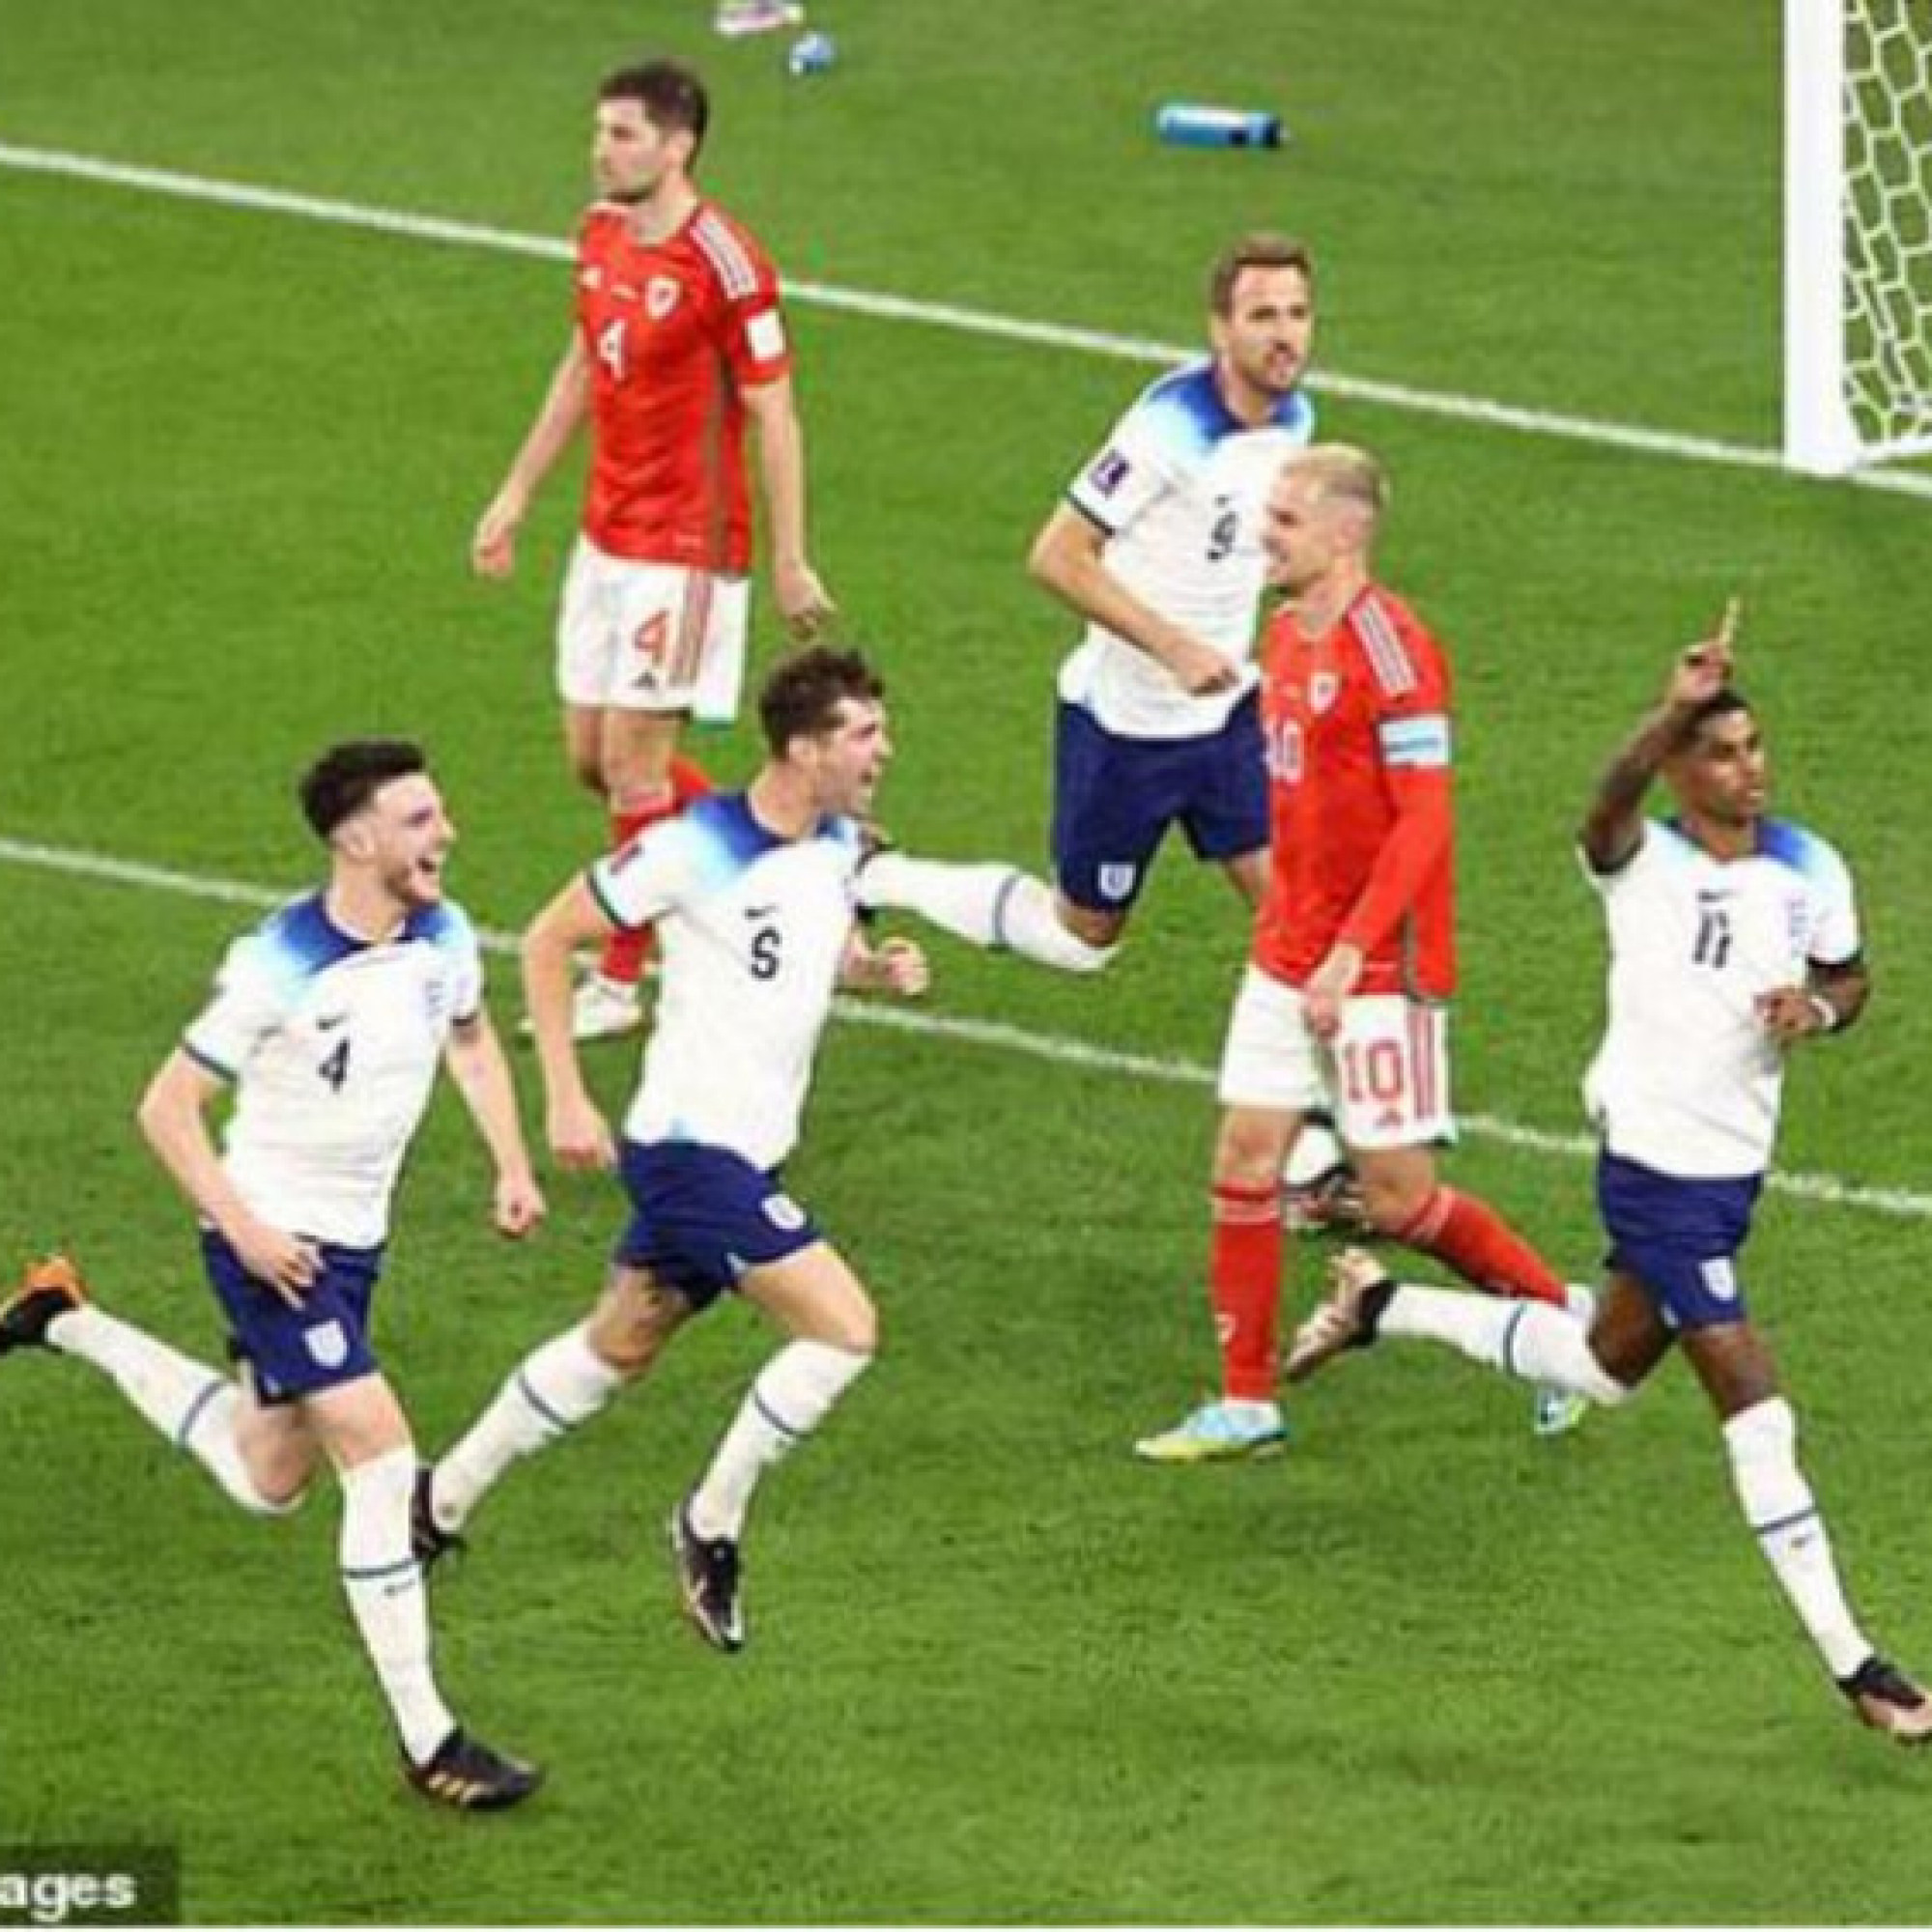  - Kết quả bóng đá xứ Wales - Anh: Đại tiệc 3 bàn, rực rỡ 2 sao trẻ (World Cup)